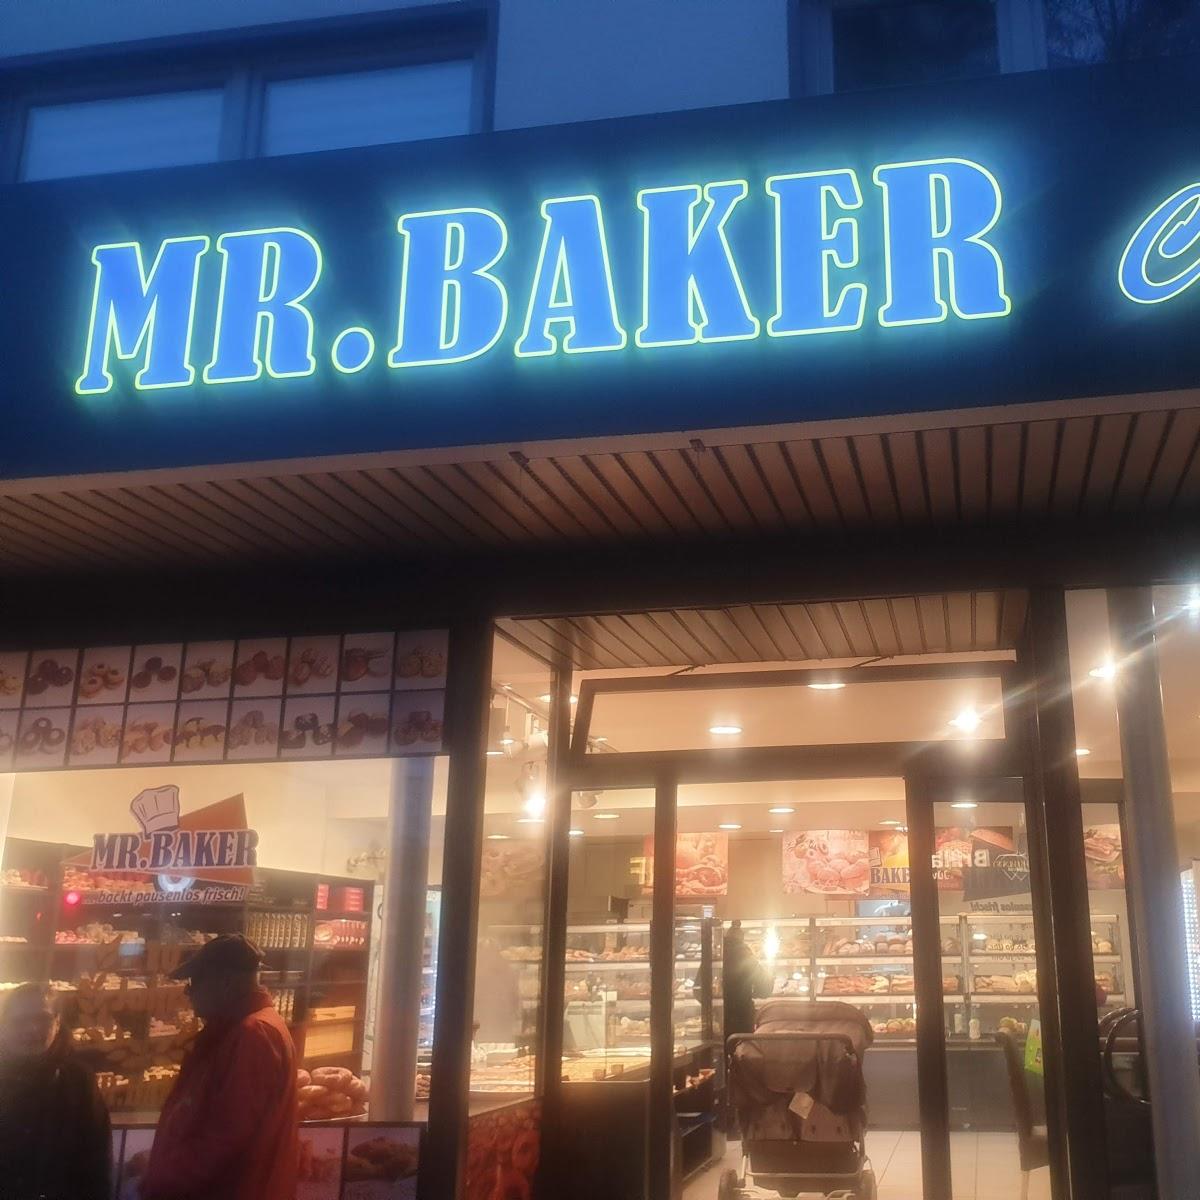 Restaurant "MR.BAKER Leverkusen GmbH" in Leverkusen